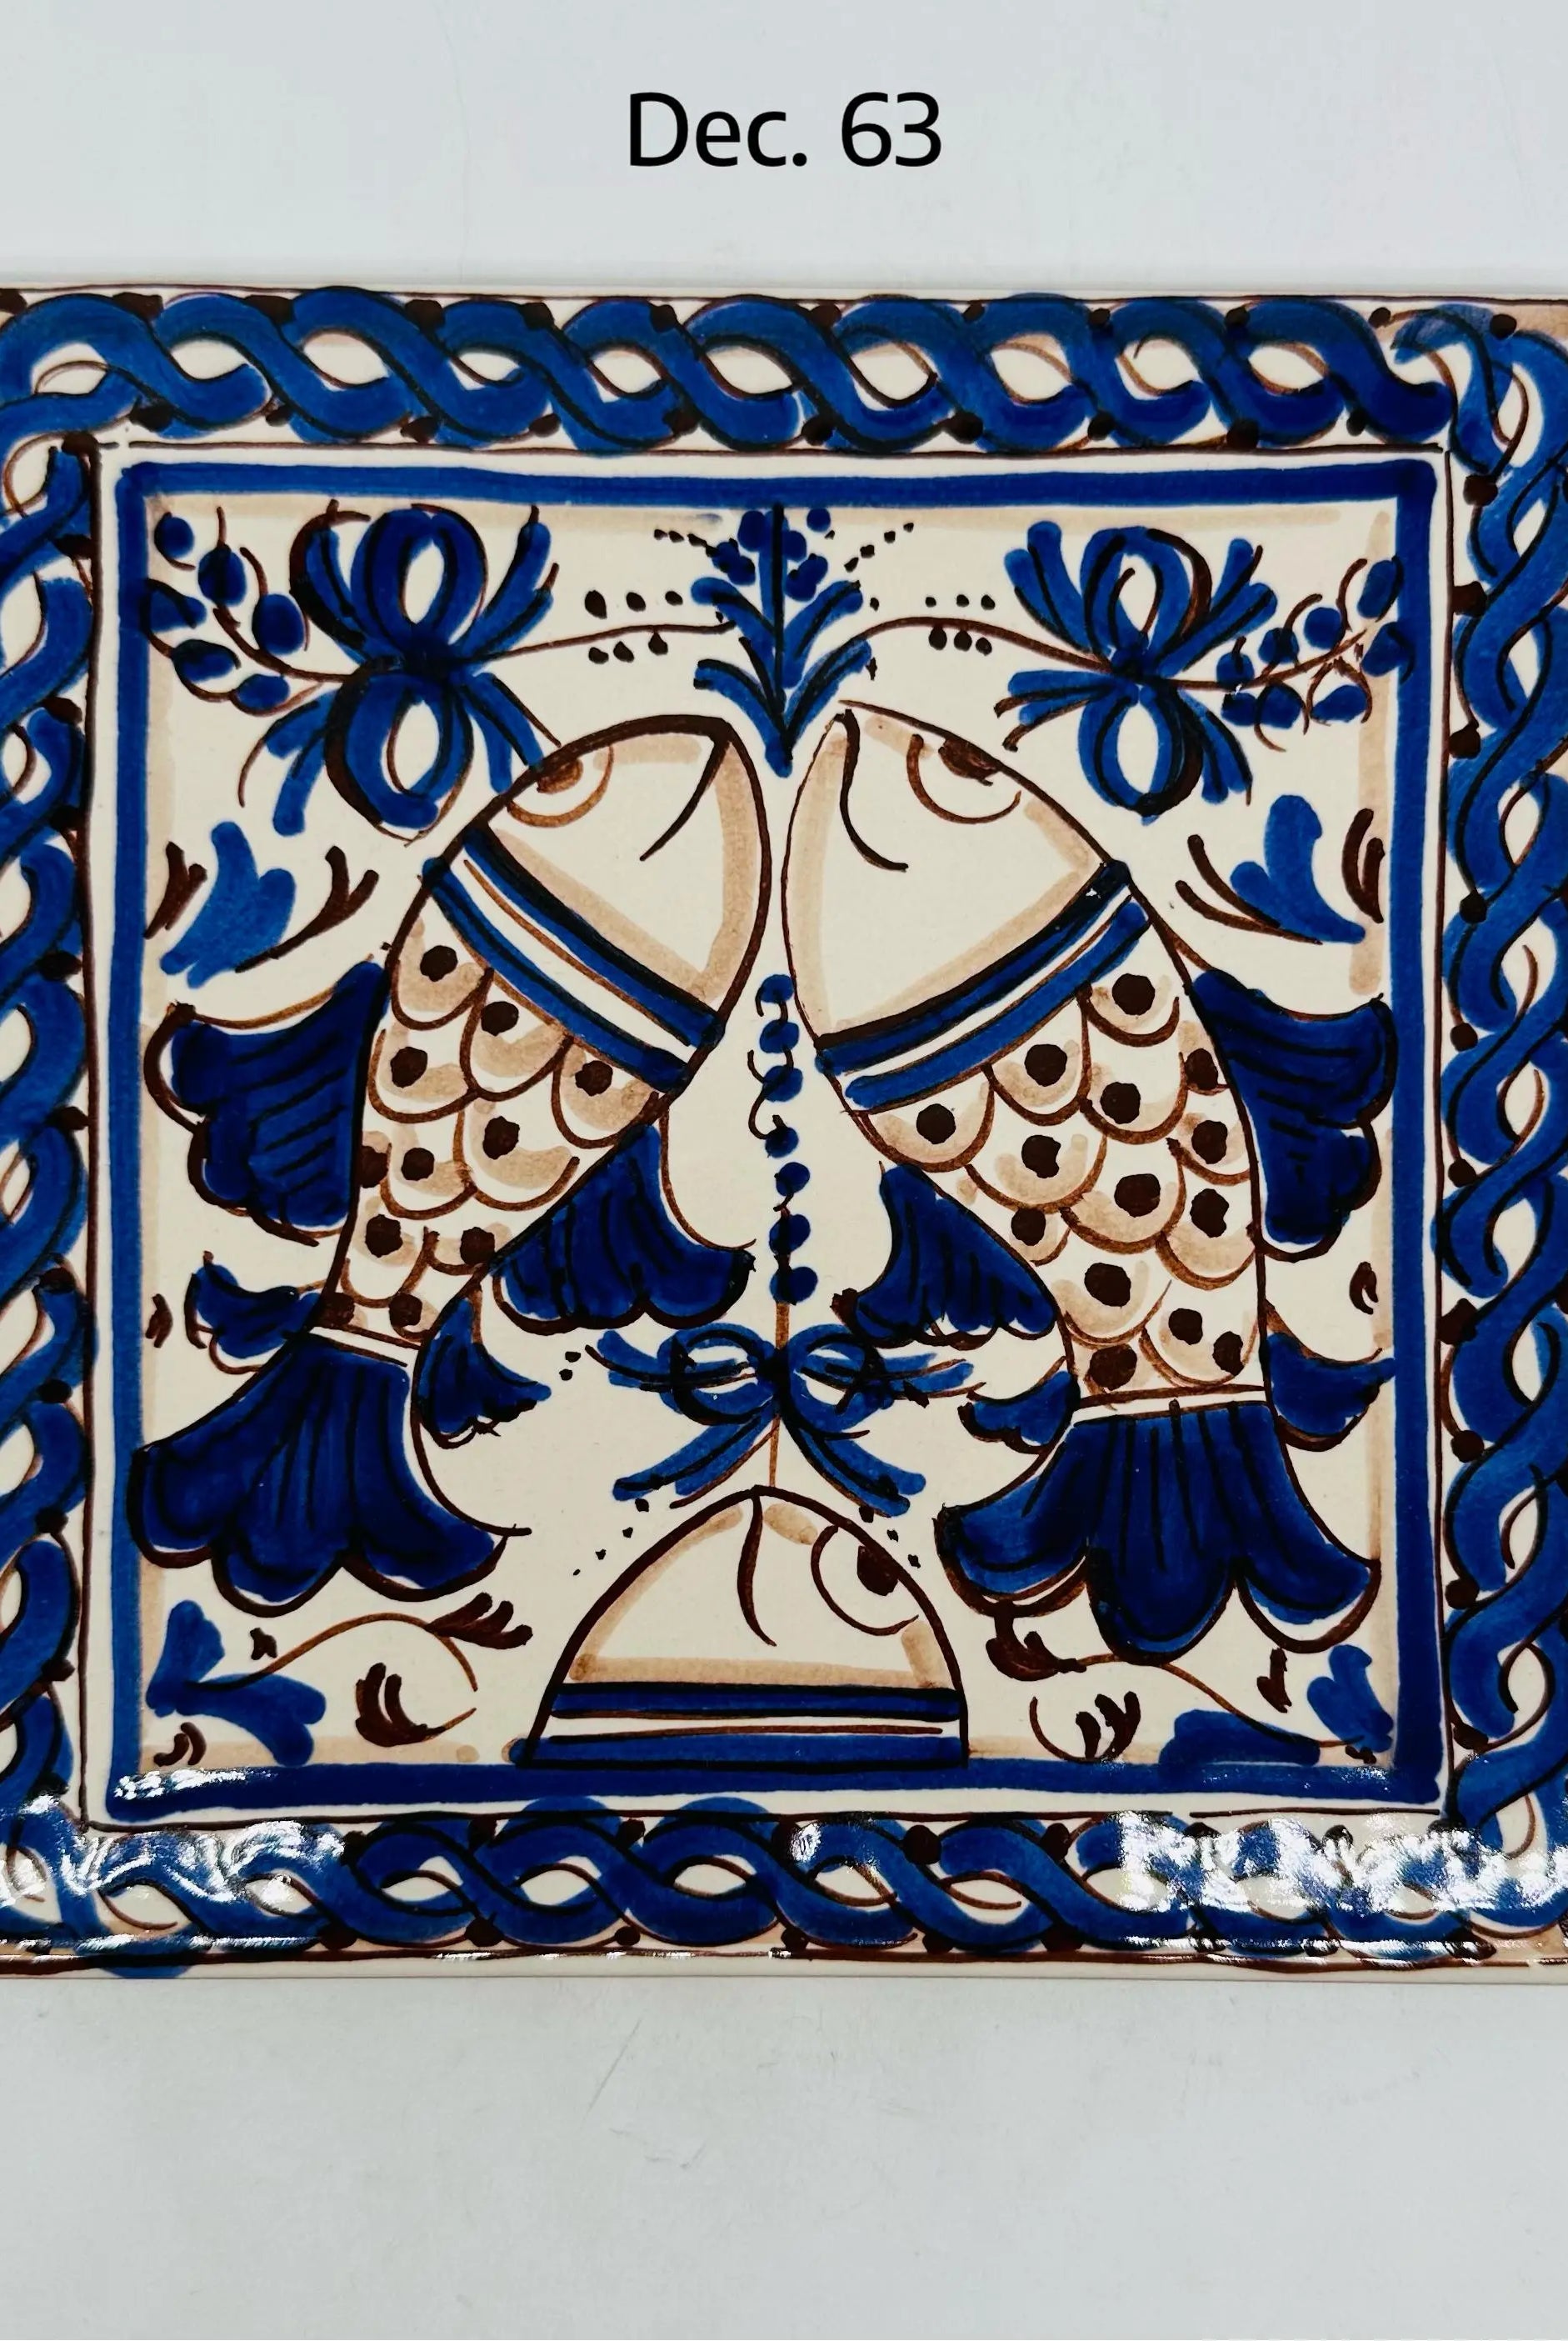 Maioliche Ceramica Caltagirone cm 20x20 Piastrelle Mattonelle decorate a mano DD CERAMICHE SICILIANE